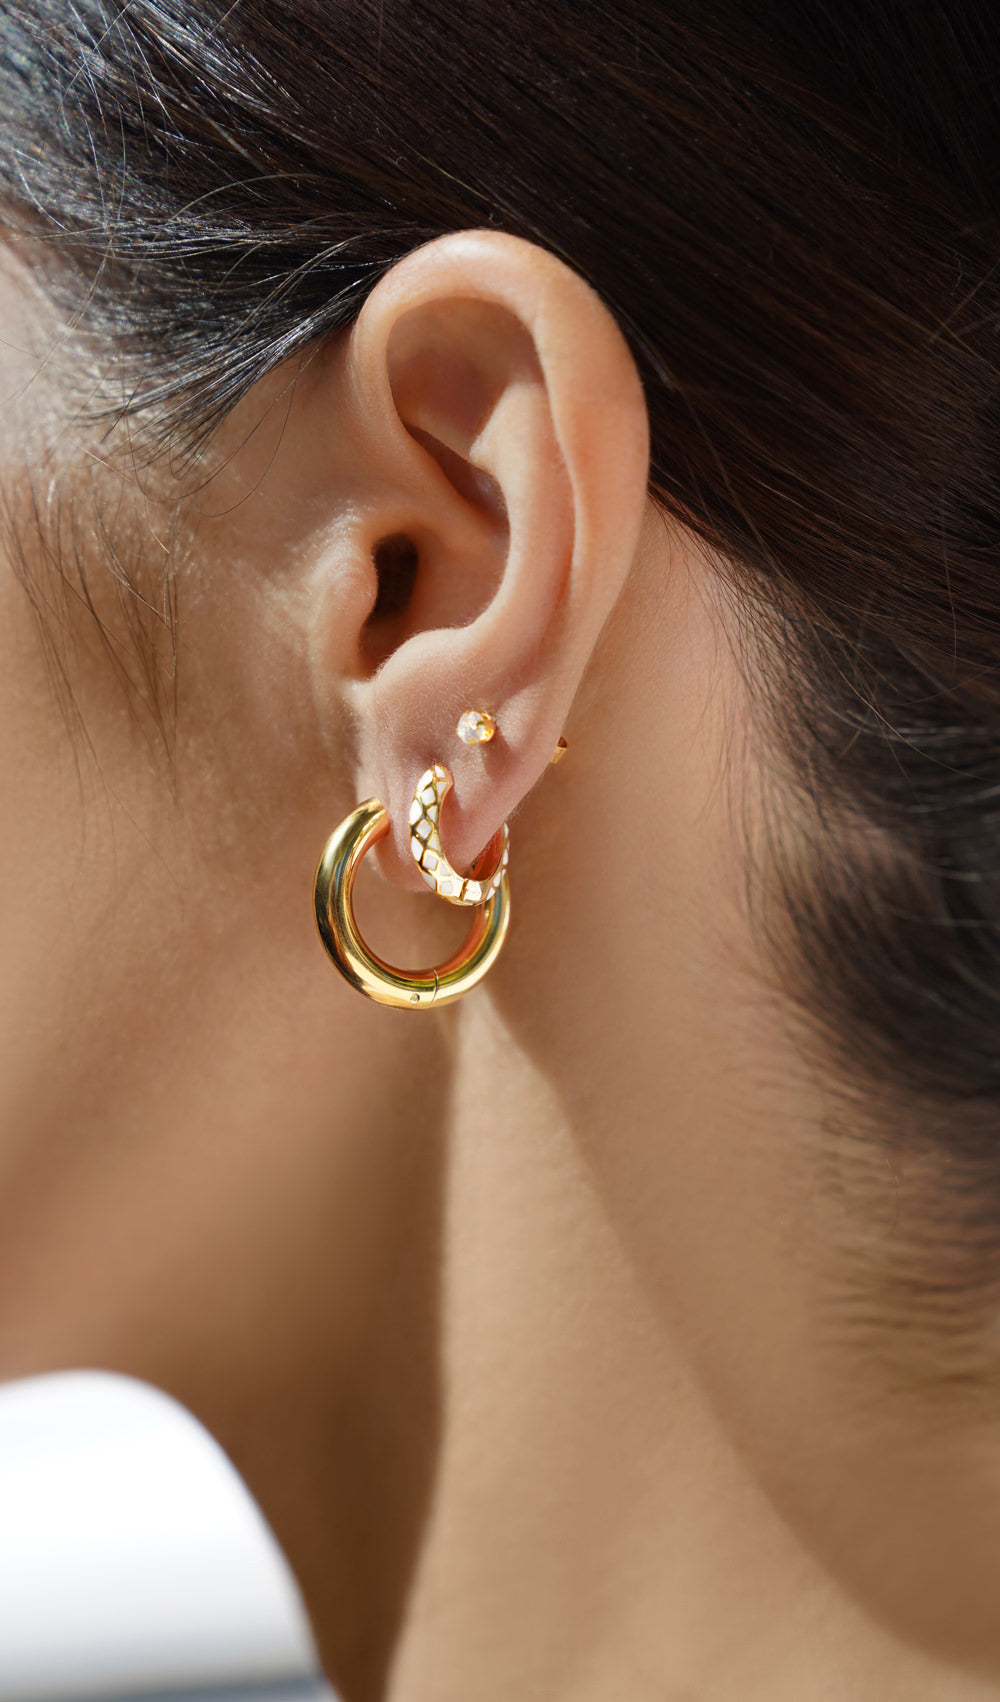 FAX Jewelry | 'Golden Hour' Gold Plated Hoop Earrings | 18-karat gold plated stainless steel hoop huggie earrings